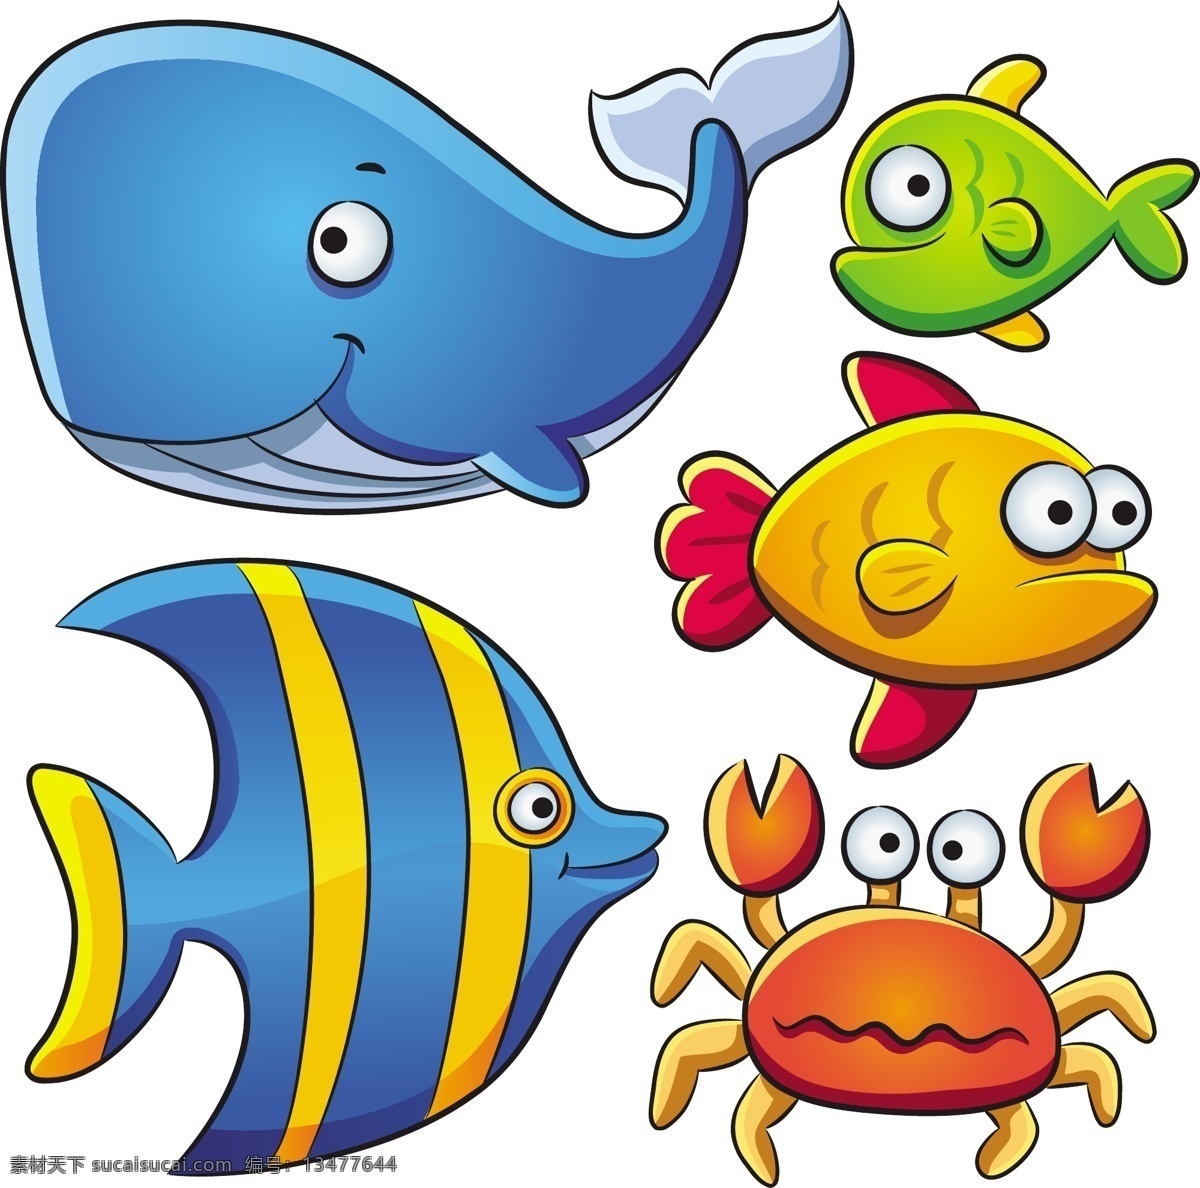 卡通 可爱 海洋 动物 矢量 鲸鱼 矢量素材 蟹 鱼 矢量图 矢量人物